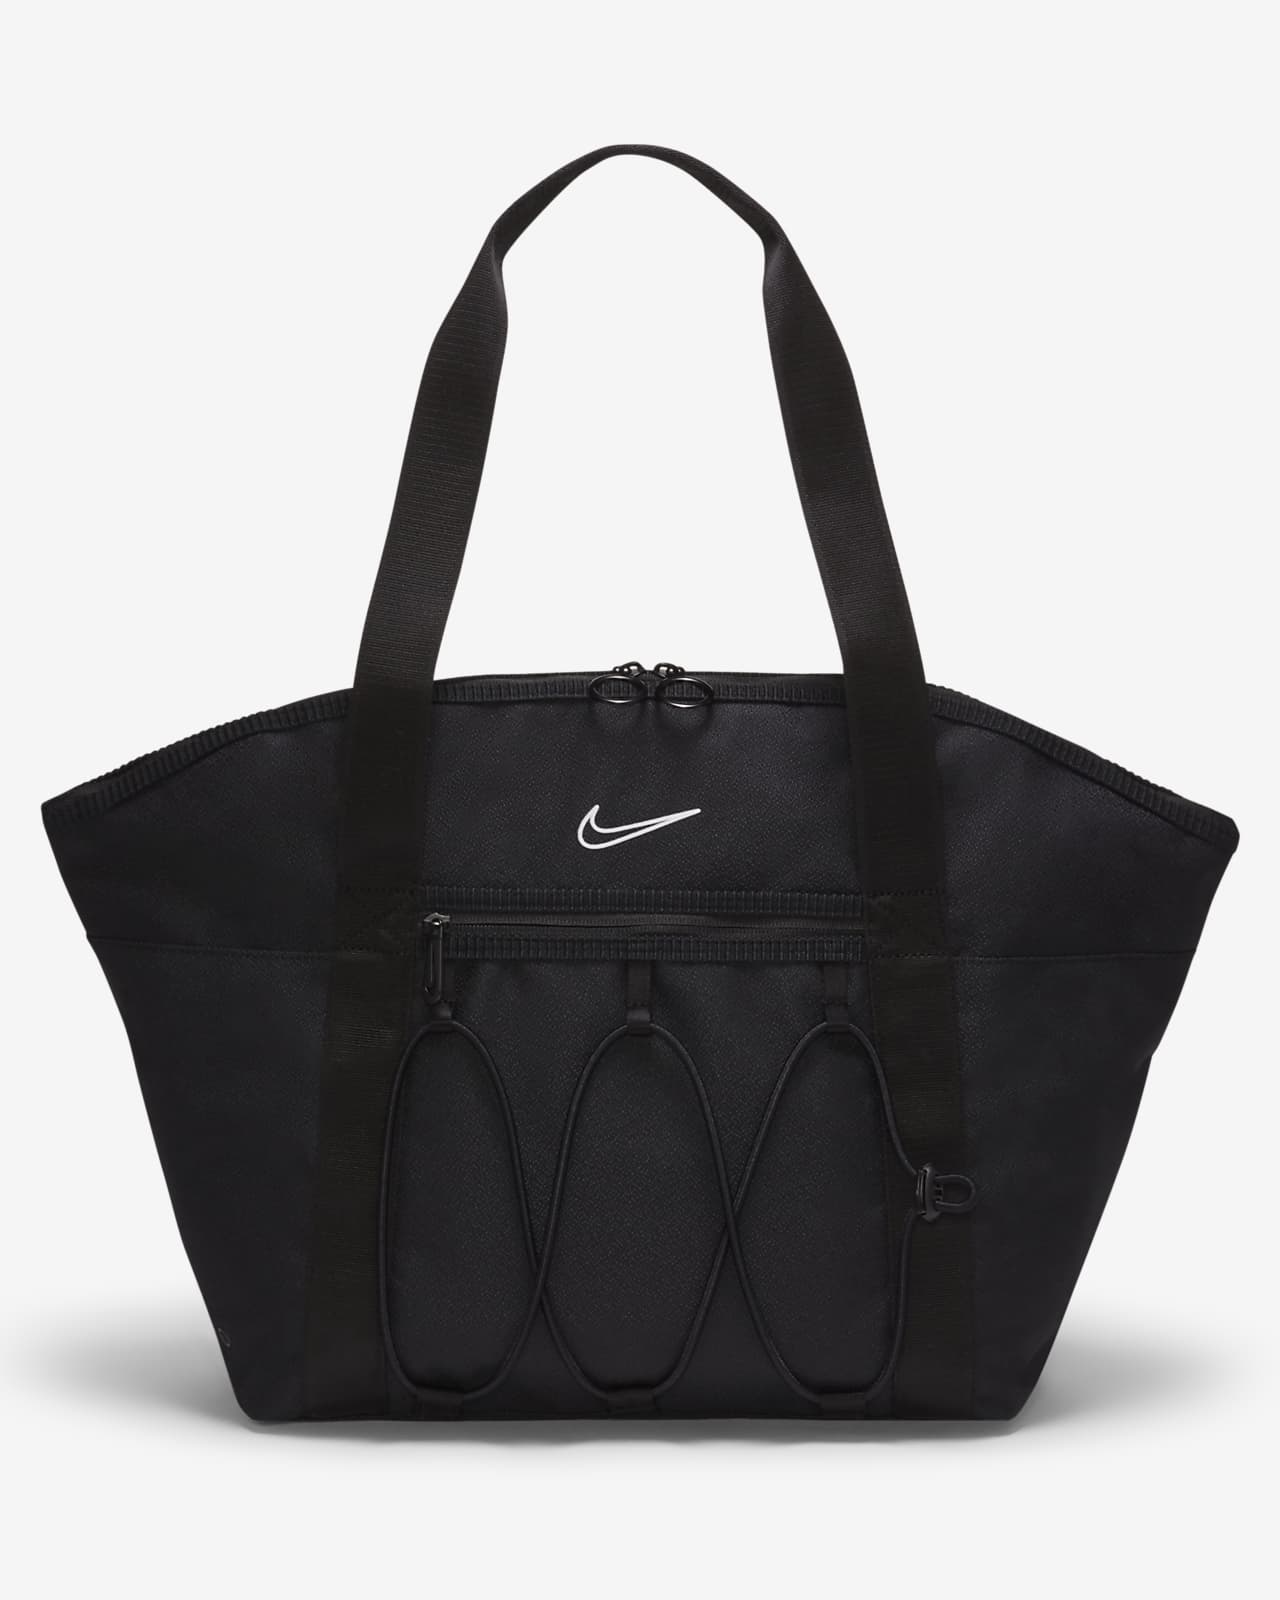 Nike One Kadın Antrenman El Çantası (18 L)